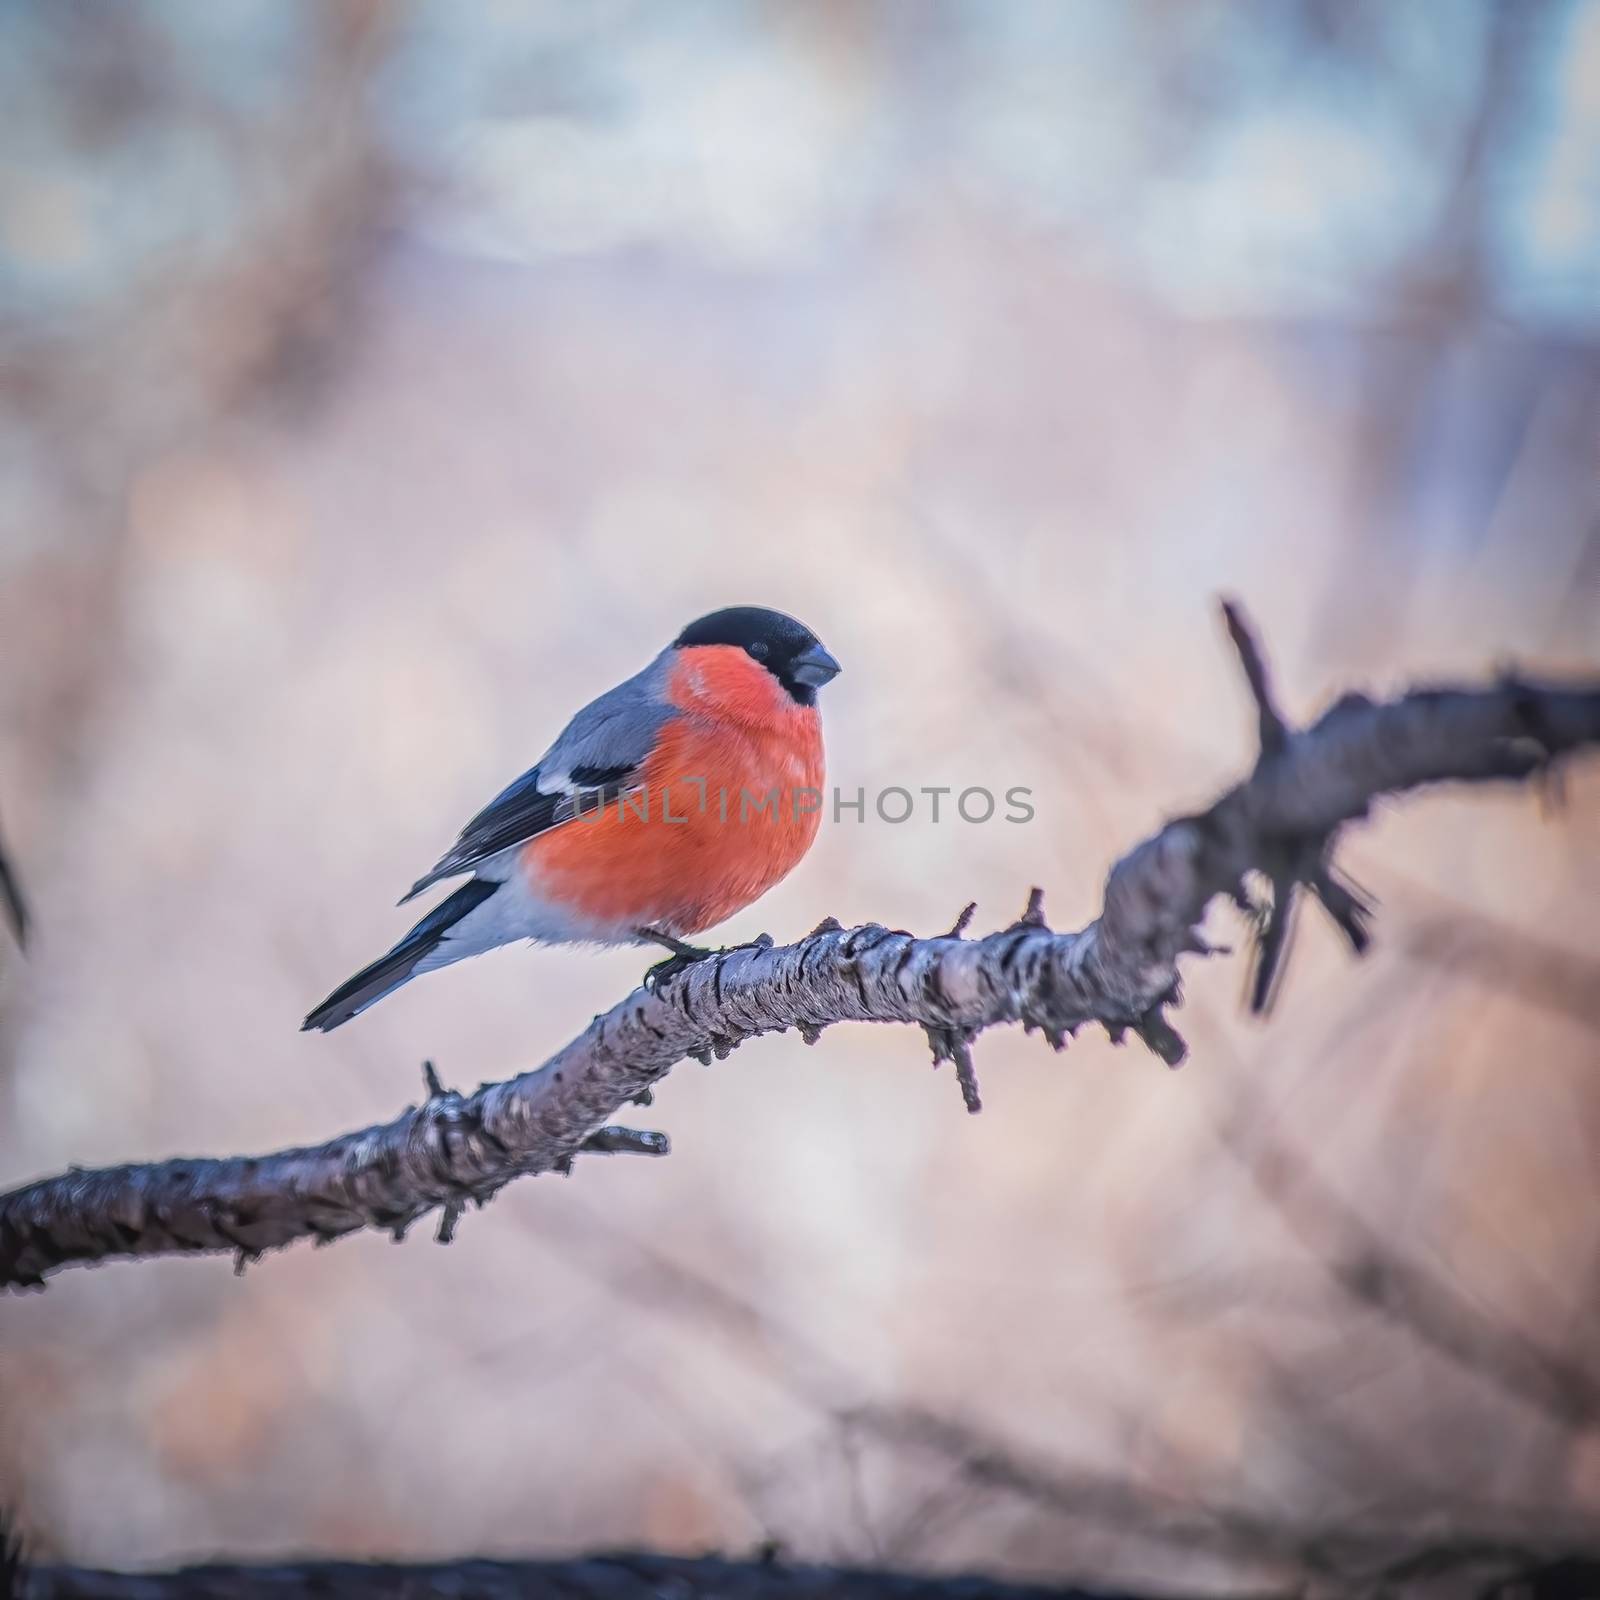 reddish chest bullfinch on a winter day by Grisha